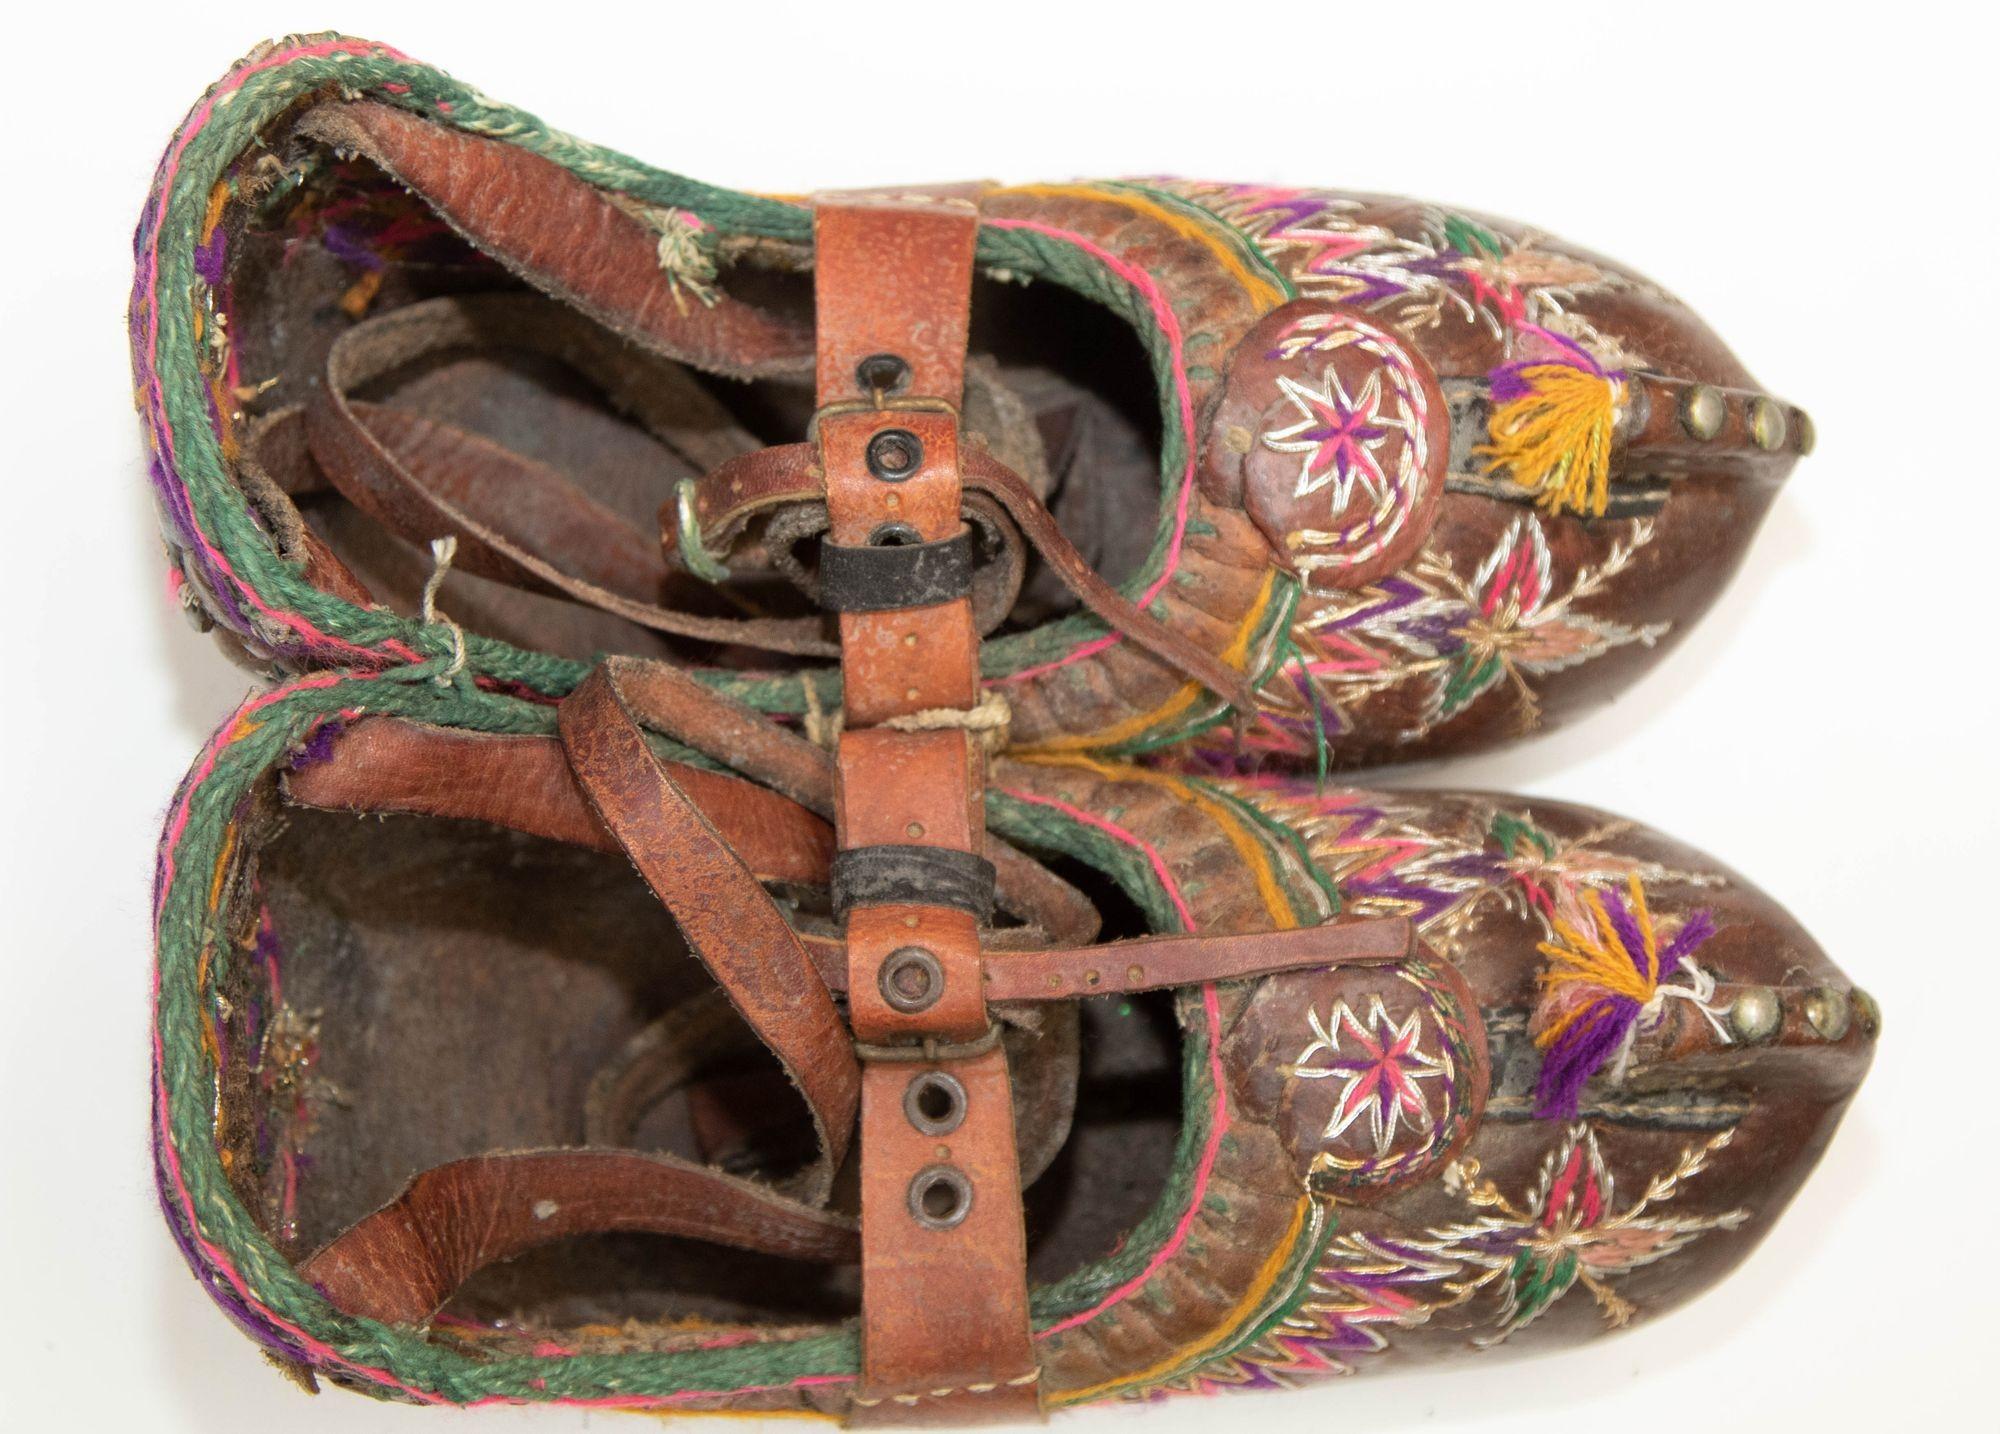 antique shoes